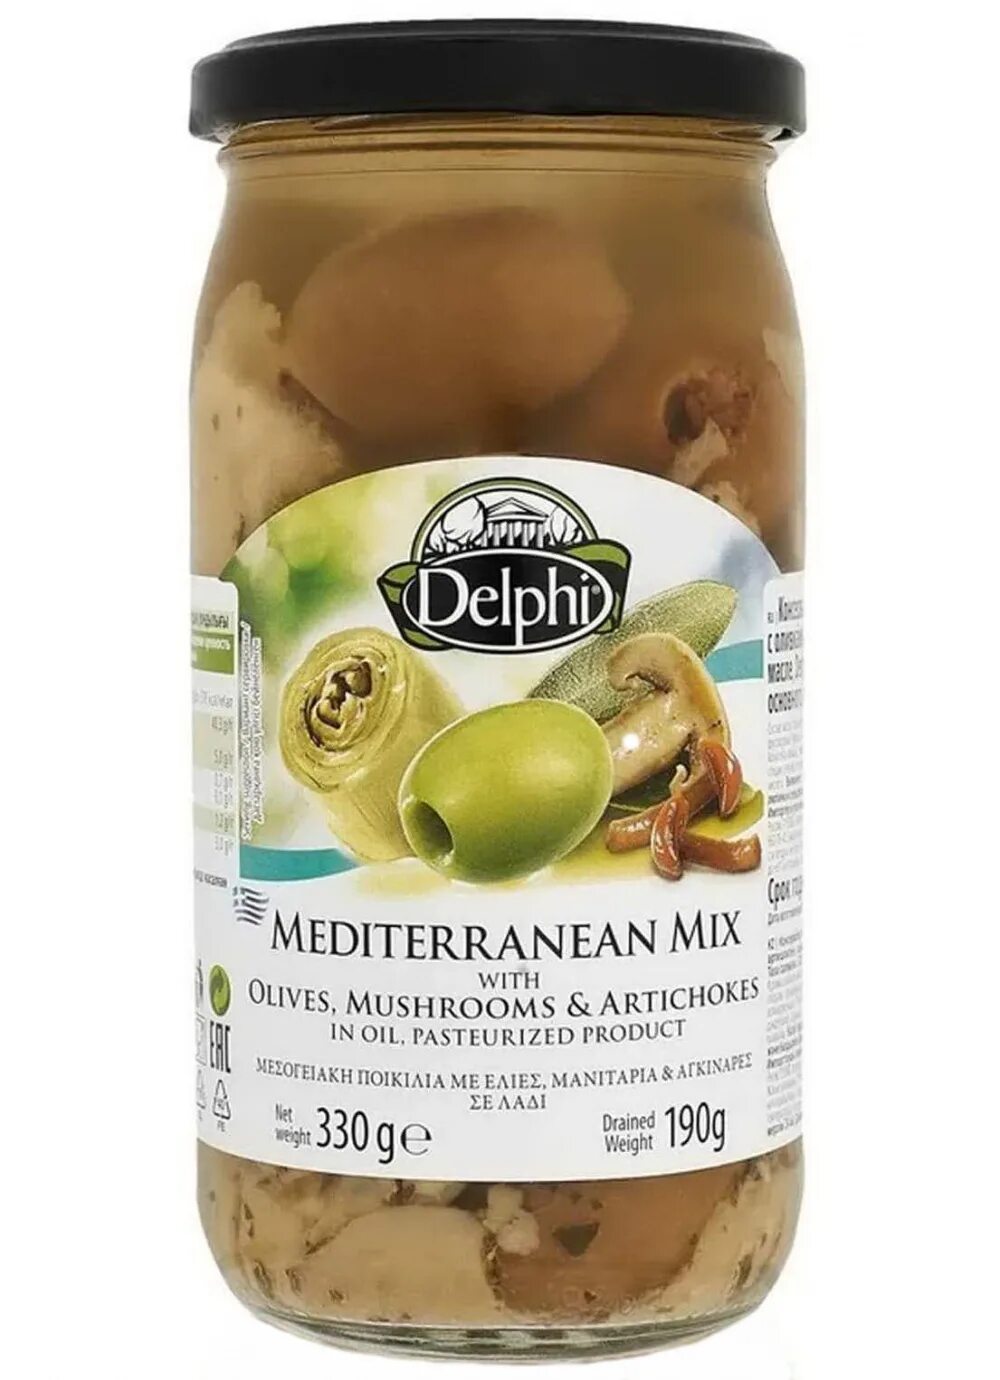 Греческая горчица. Микс Средиземноморский олив/гриб/артиш в/м 330г ст Делфи. Оливки с грибами. Греческие оливки.